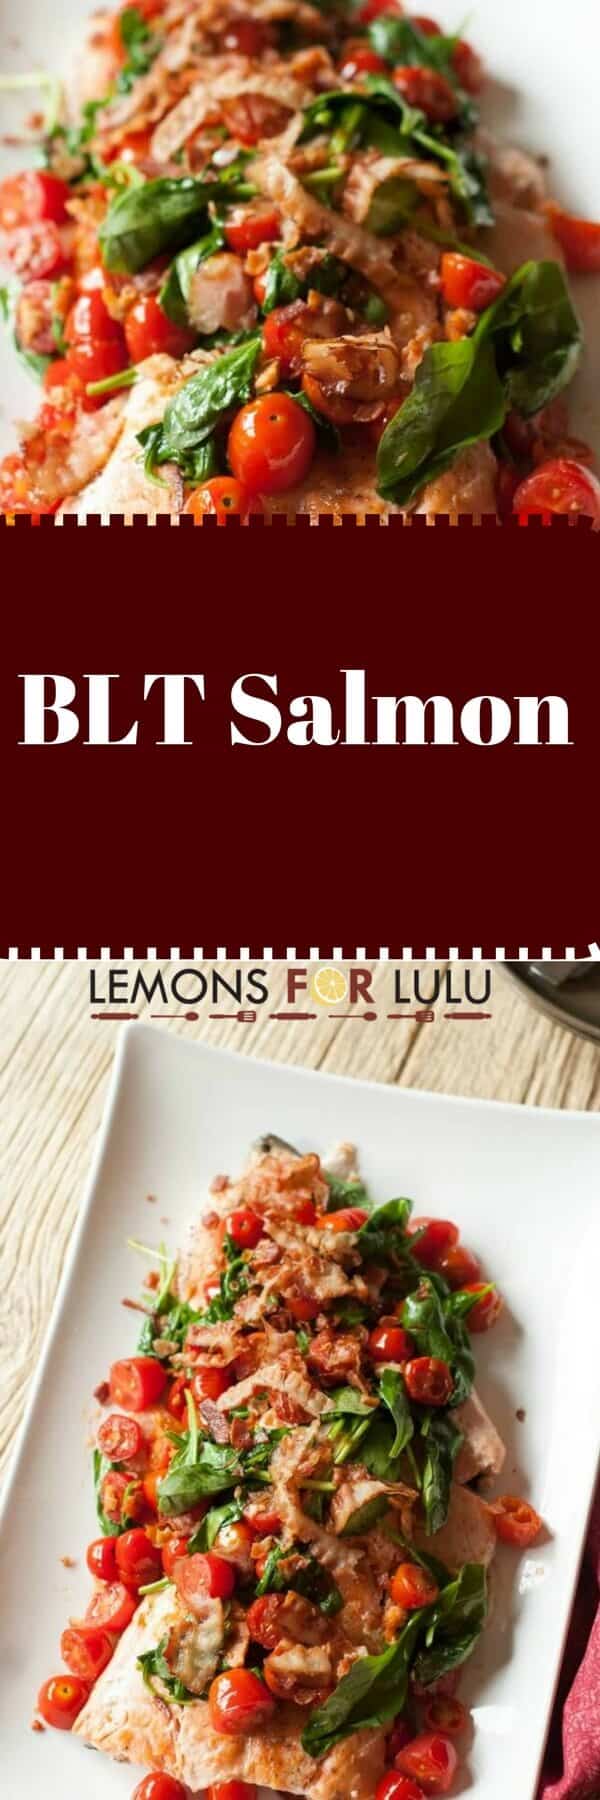 BLT Salmon - Lemons for Lulu